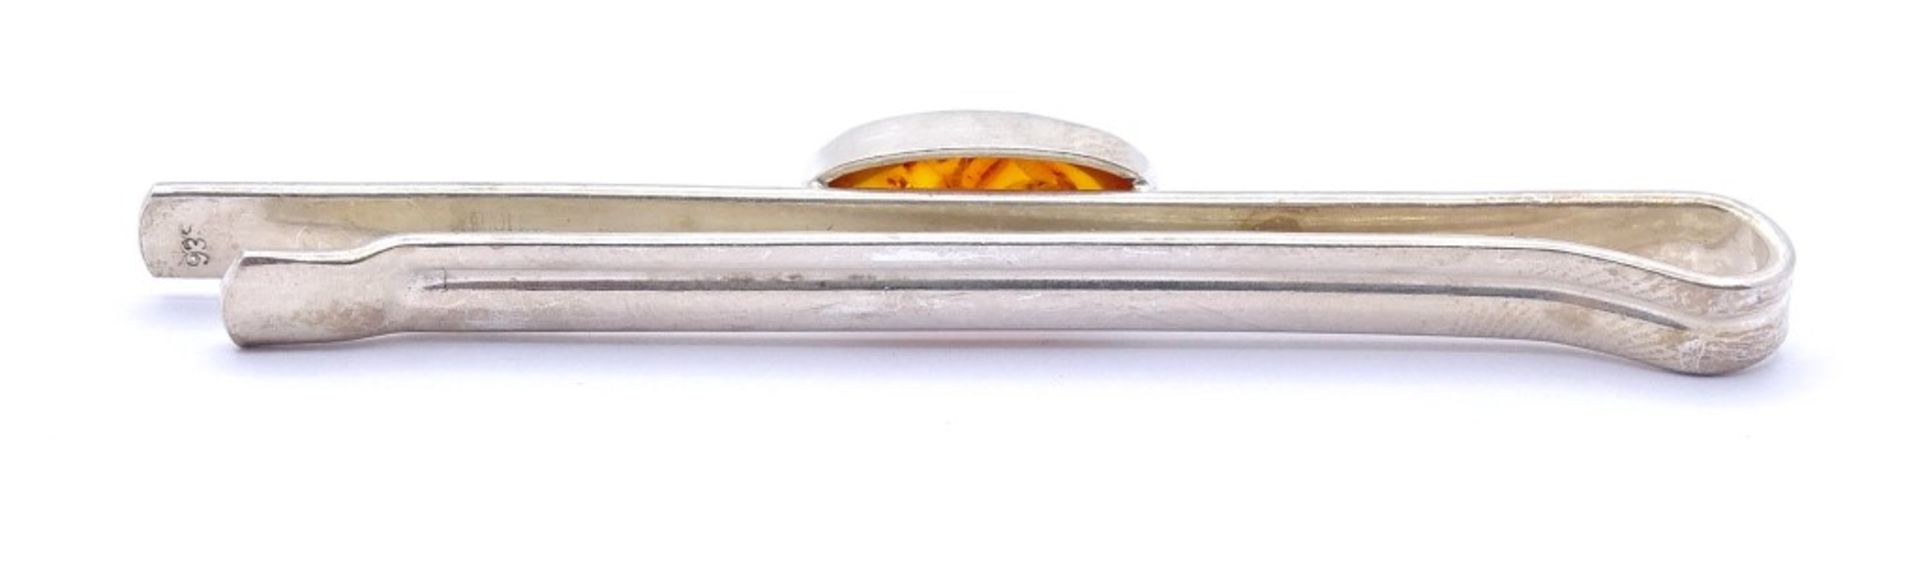 Krawatten Nadel mit Bernstein Cabochon,Silber 935/000,L- 7,1cm, 8,6gr. - Image 3 of 3